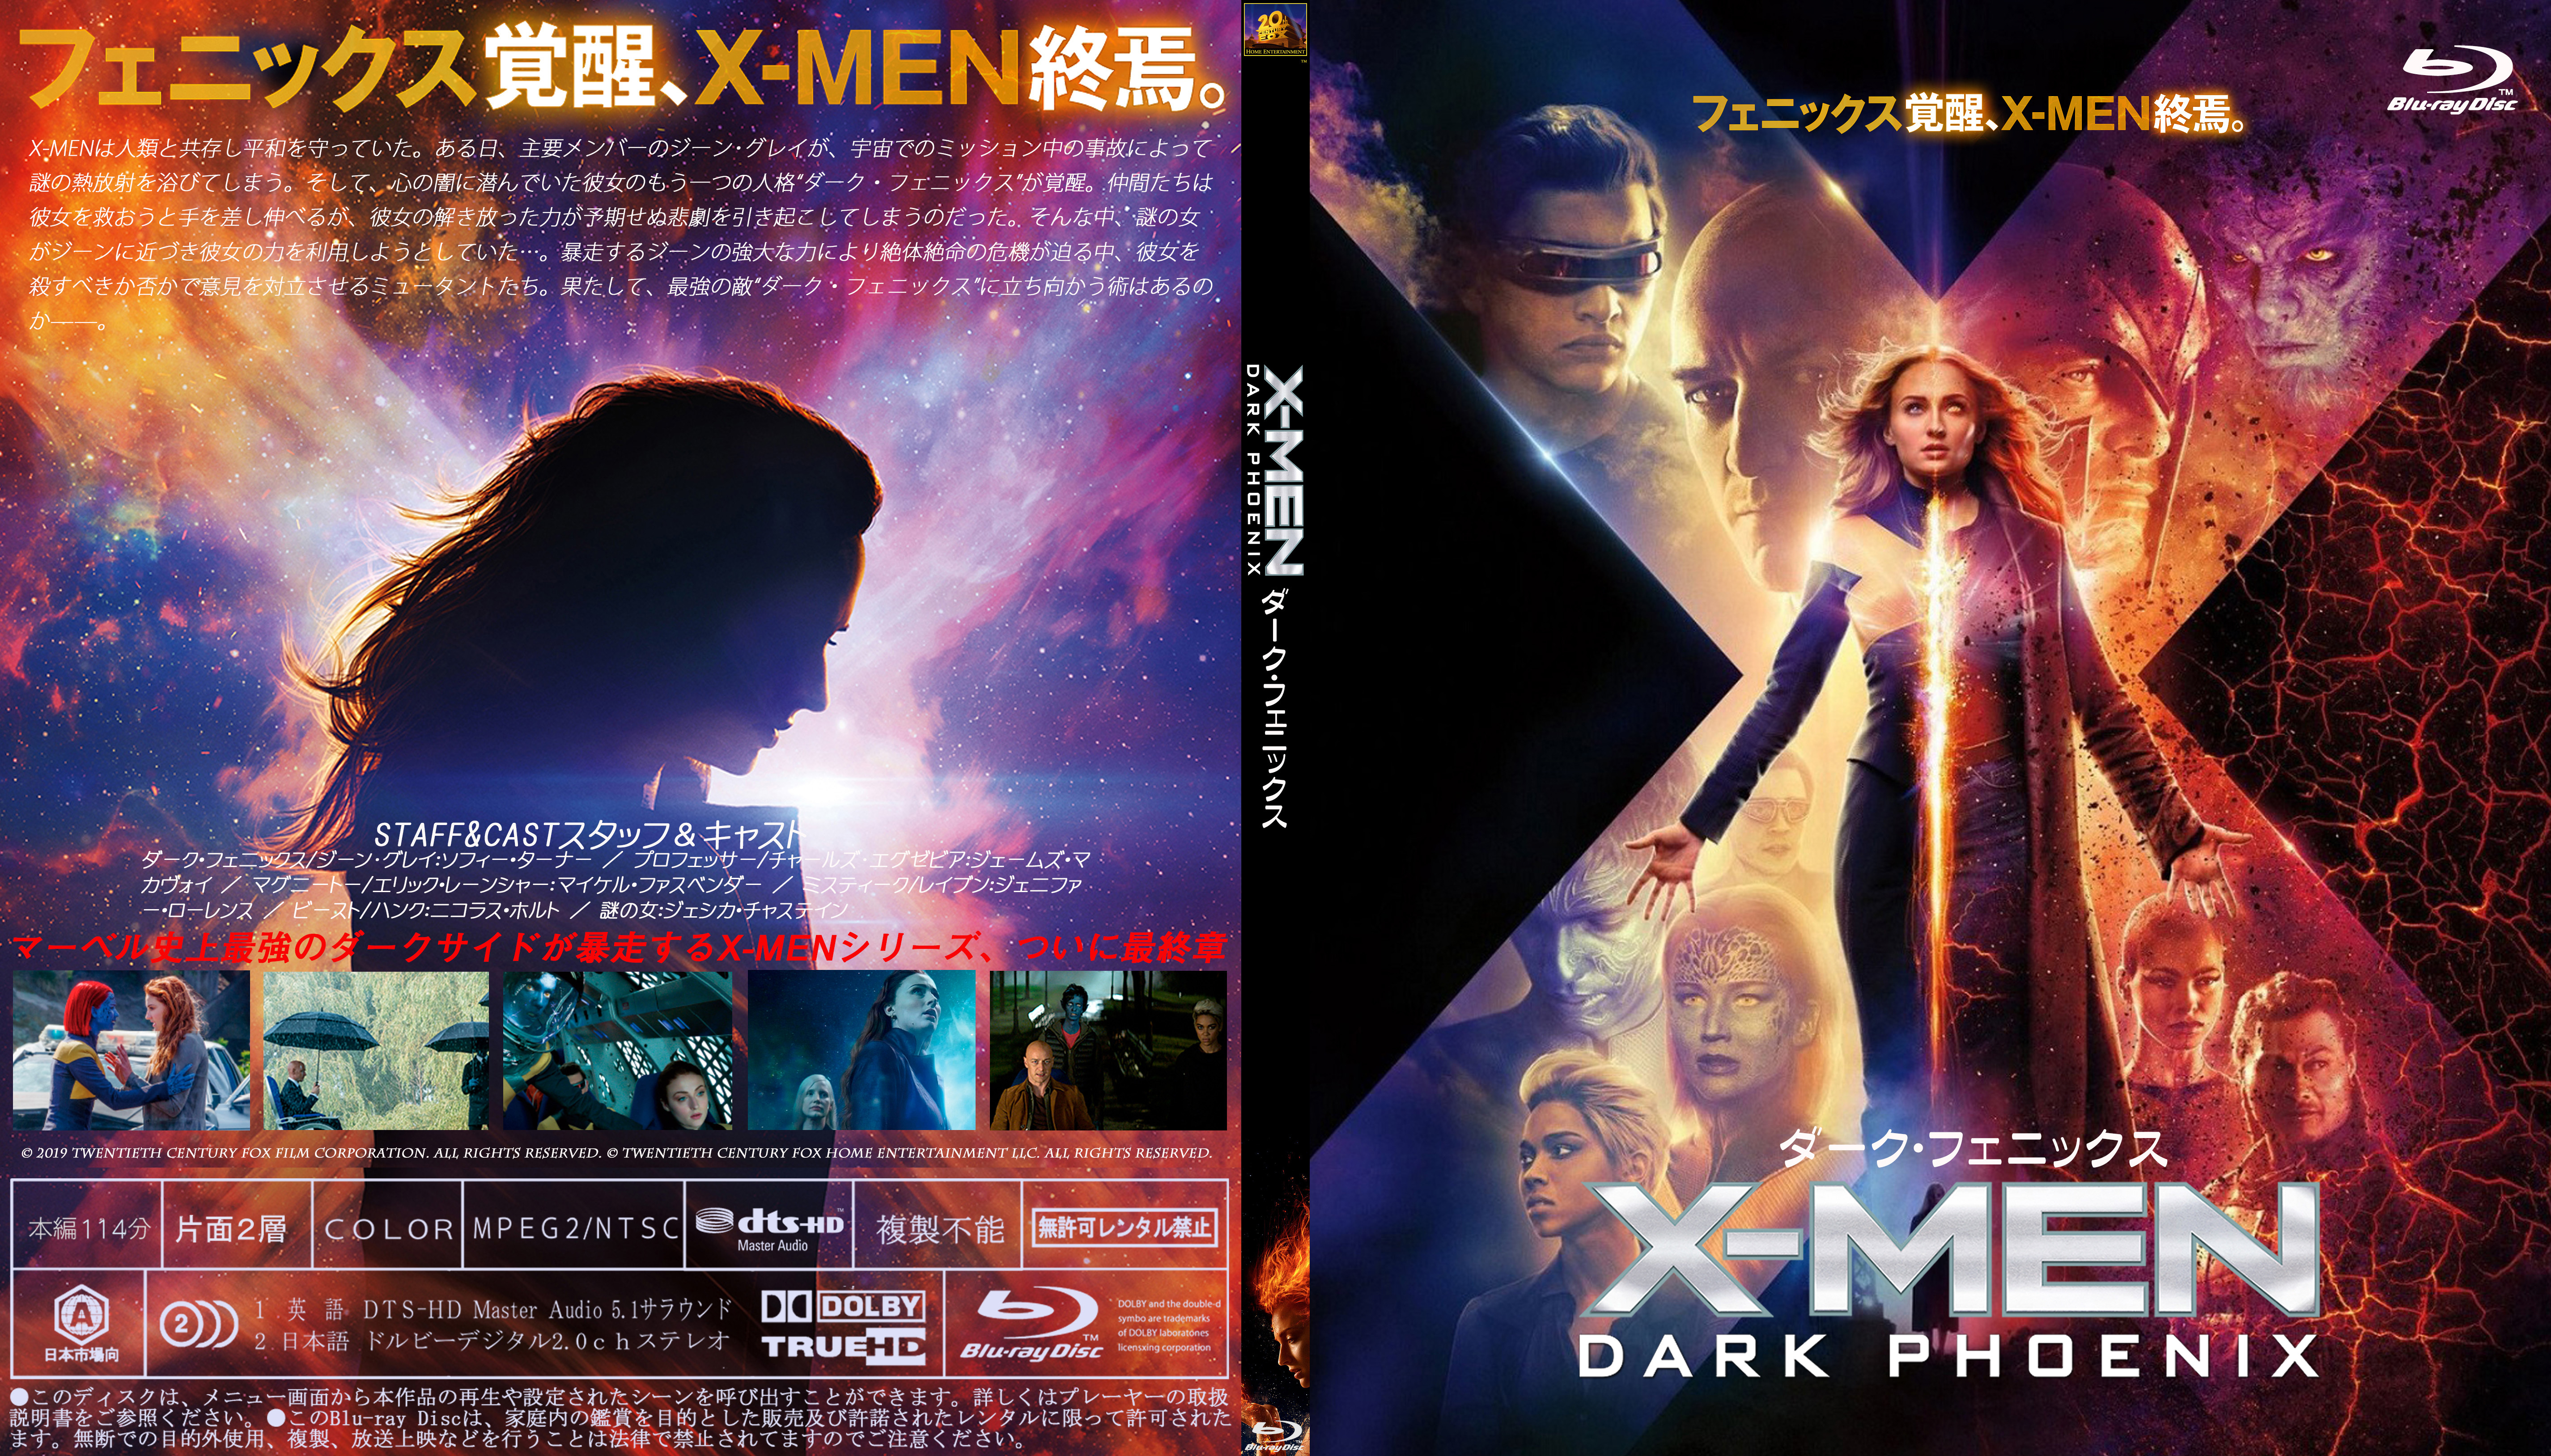 ないよりまし 映画 ドラマのジャケット ラベル 録画用 X Men ダーク フェニックス